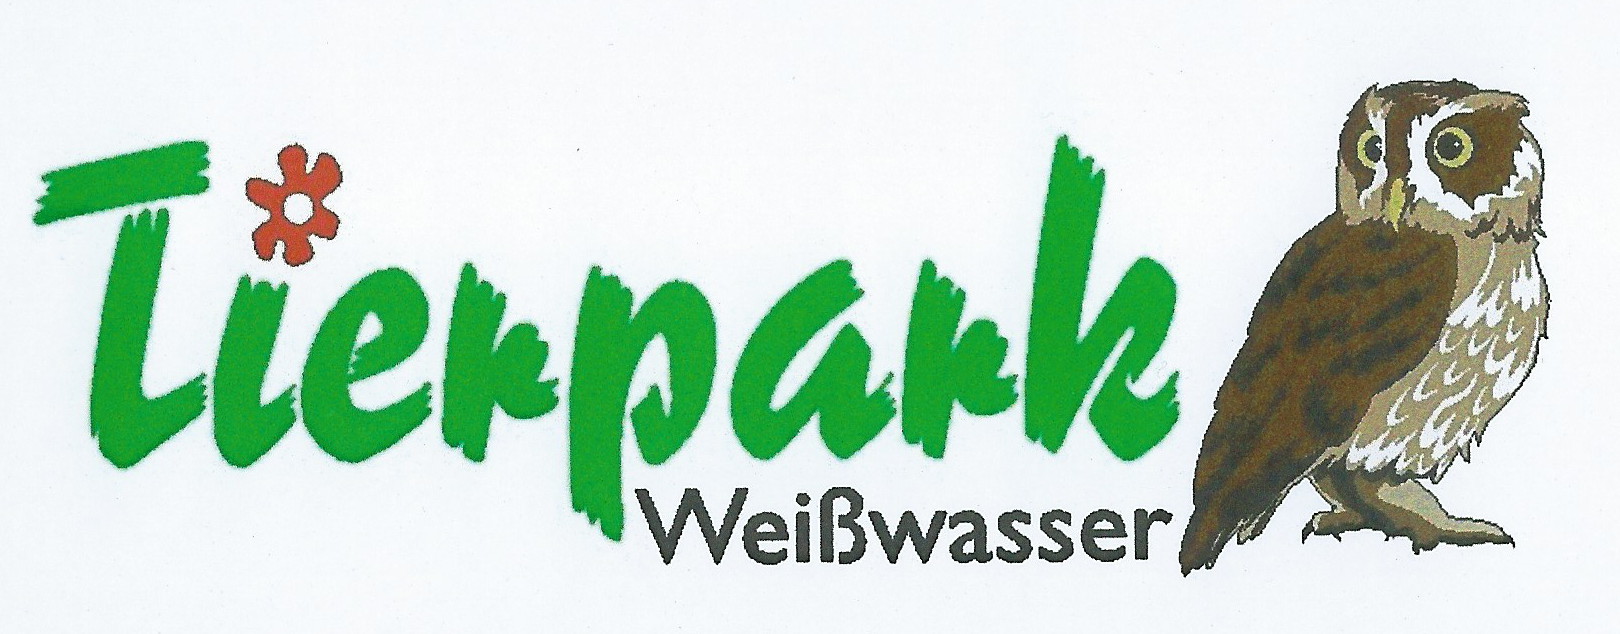 TPWSW Logo